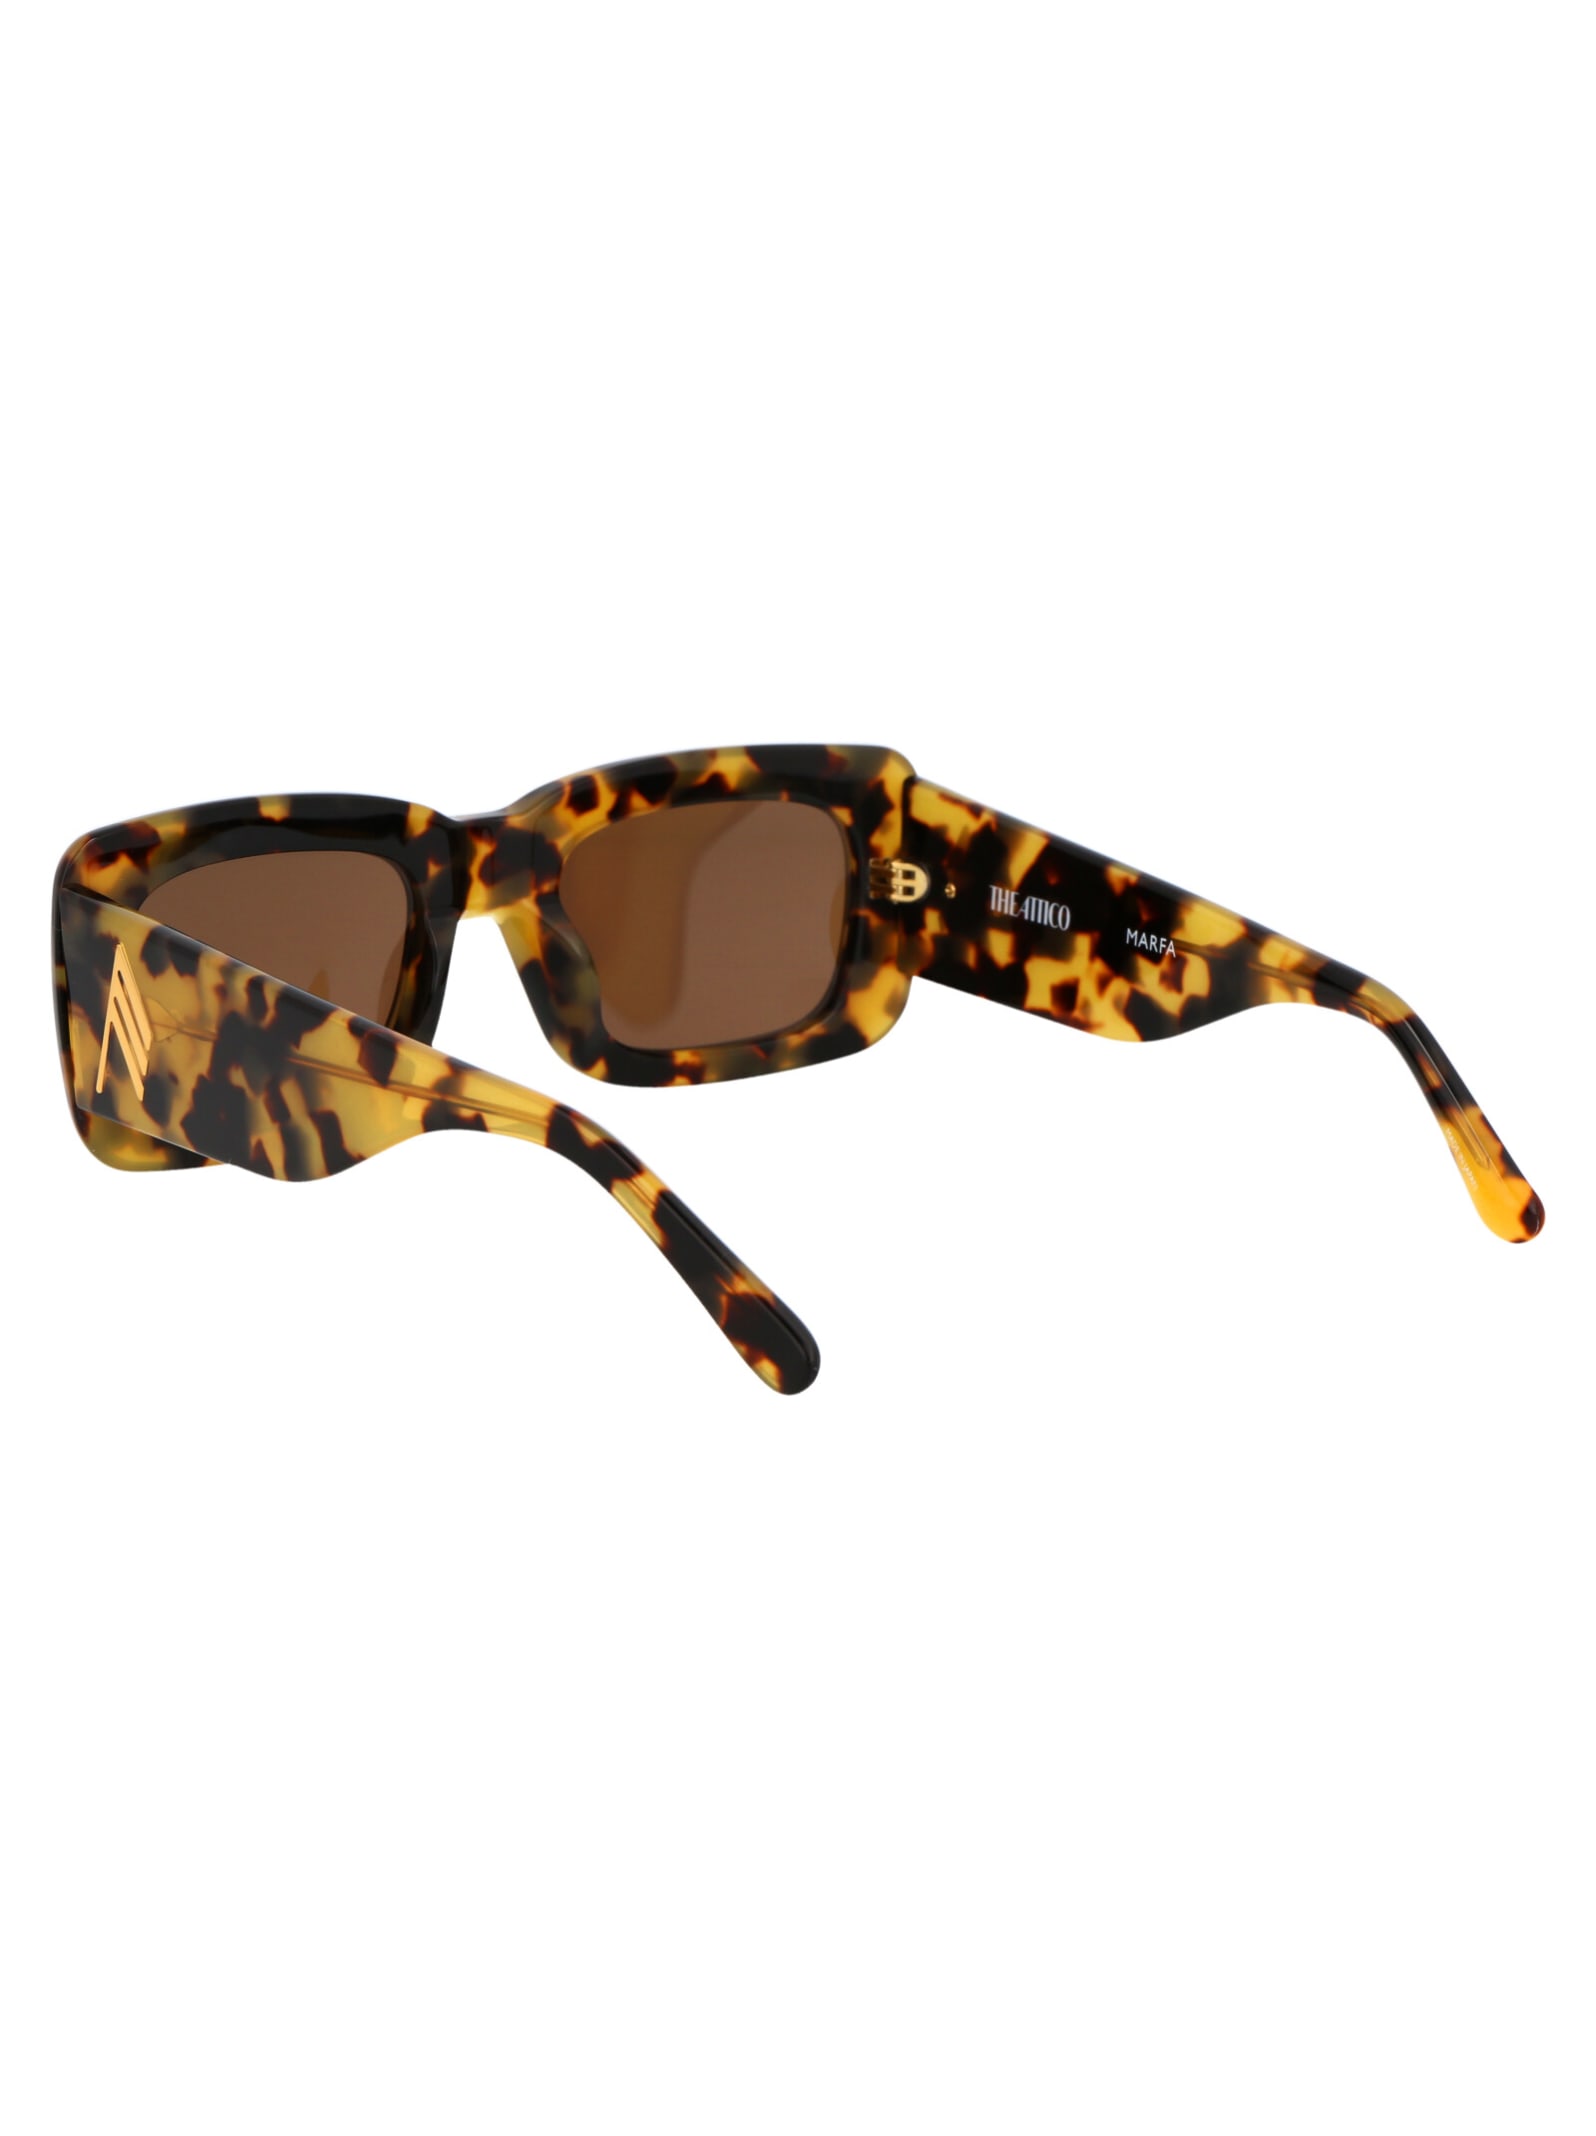 Shop Attico Marfa Sunglasses In T-shell/yellowgold/brown